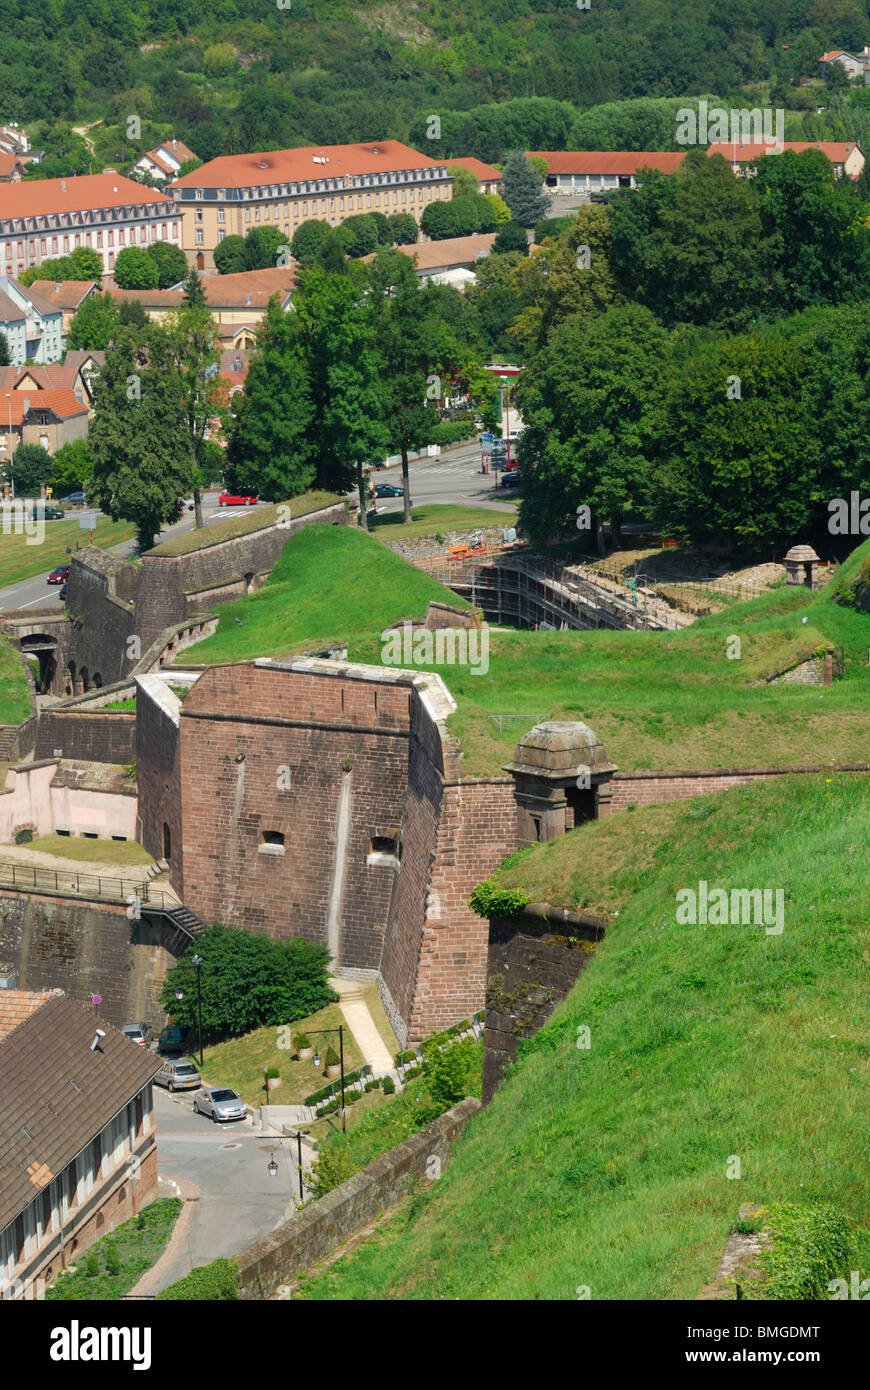 Les murs des fortifications de Belfort citadelle construite par Vauban. Le Territoire de Belfort, région de Franche-Comté, France Banque D'Images